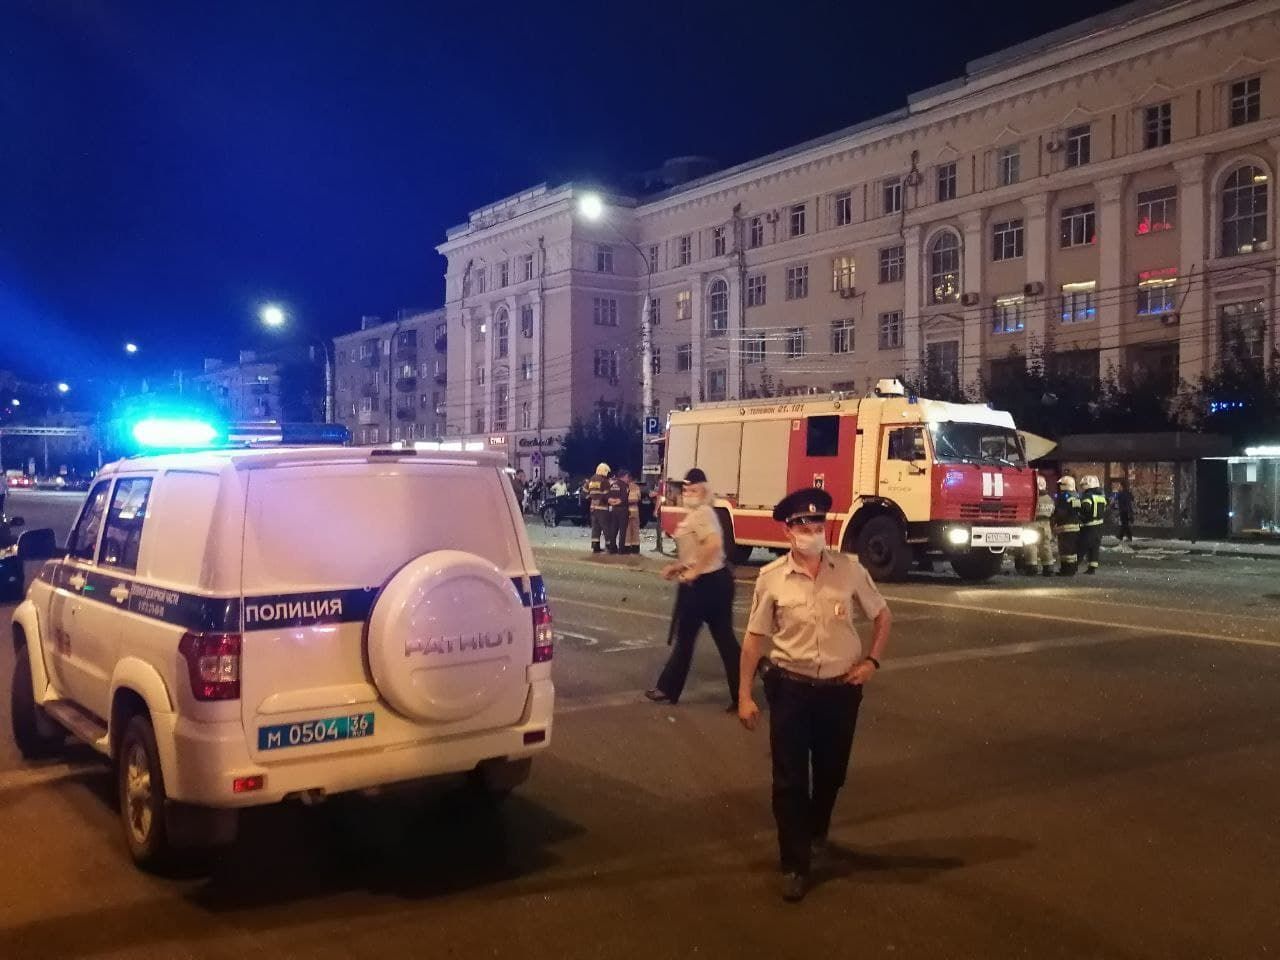 Много дыма, взрывная волна ушла наверх - появились кадры взрыва автобуса в Воронеже